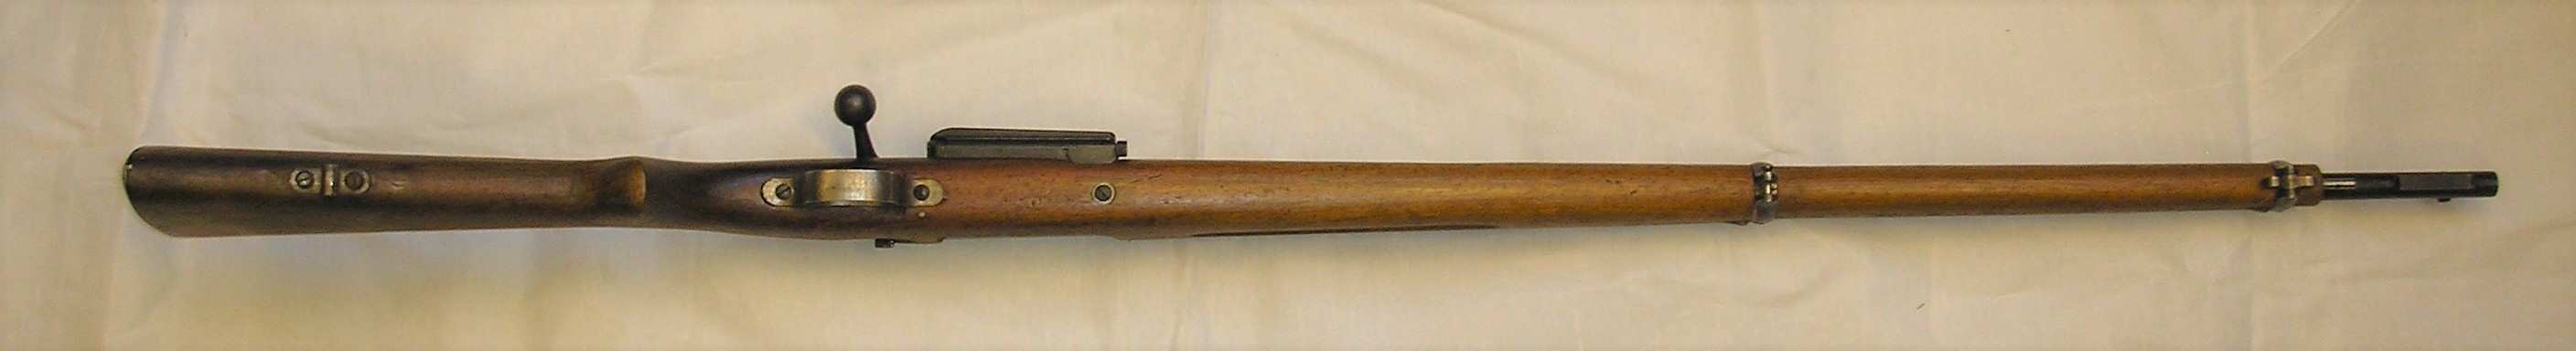 ./guns/rifle/bilder/Rifle-Kongsberg-Krag-M1894-1944-Nb090-3.JPG